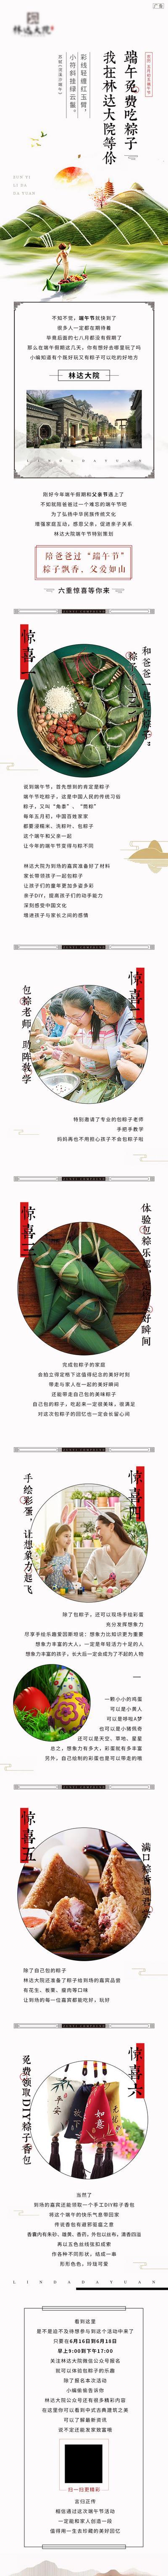 南门网 专题设计 长图 房地产 端午节 中国传统节日 包粽子DIY 暖场活动 龙舟 粽子 